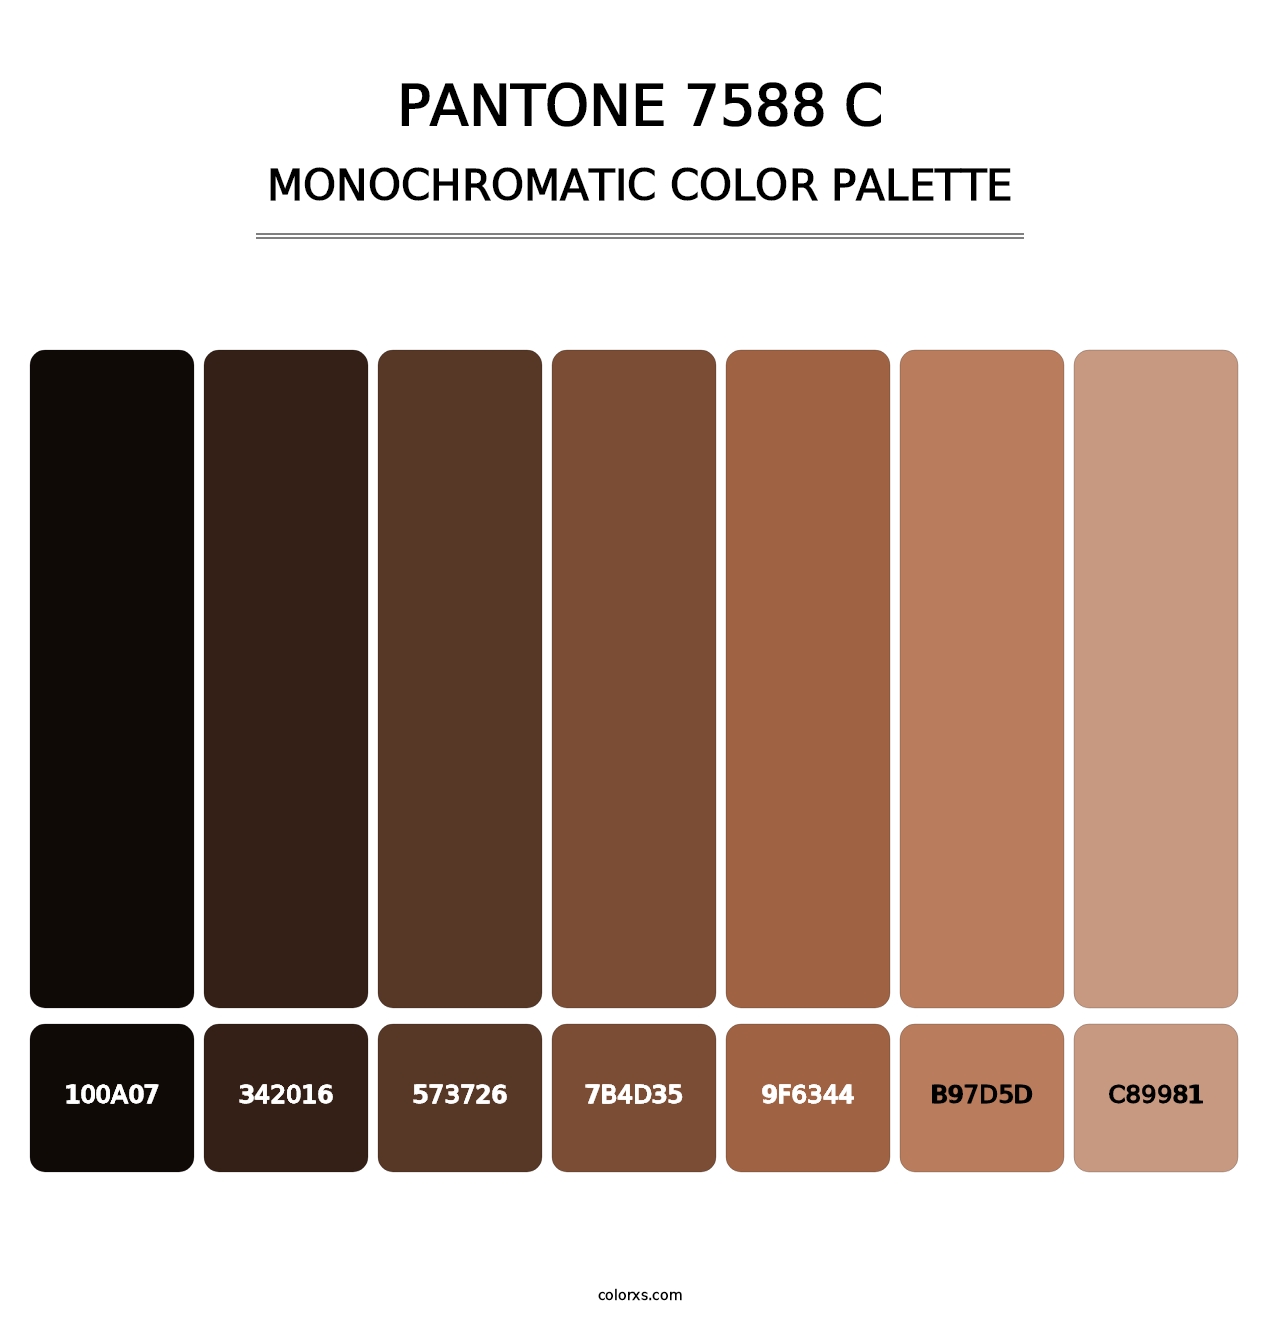 PANTONE 7588 C - Monochromatic Color Palette